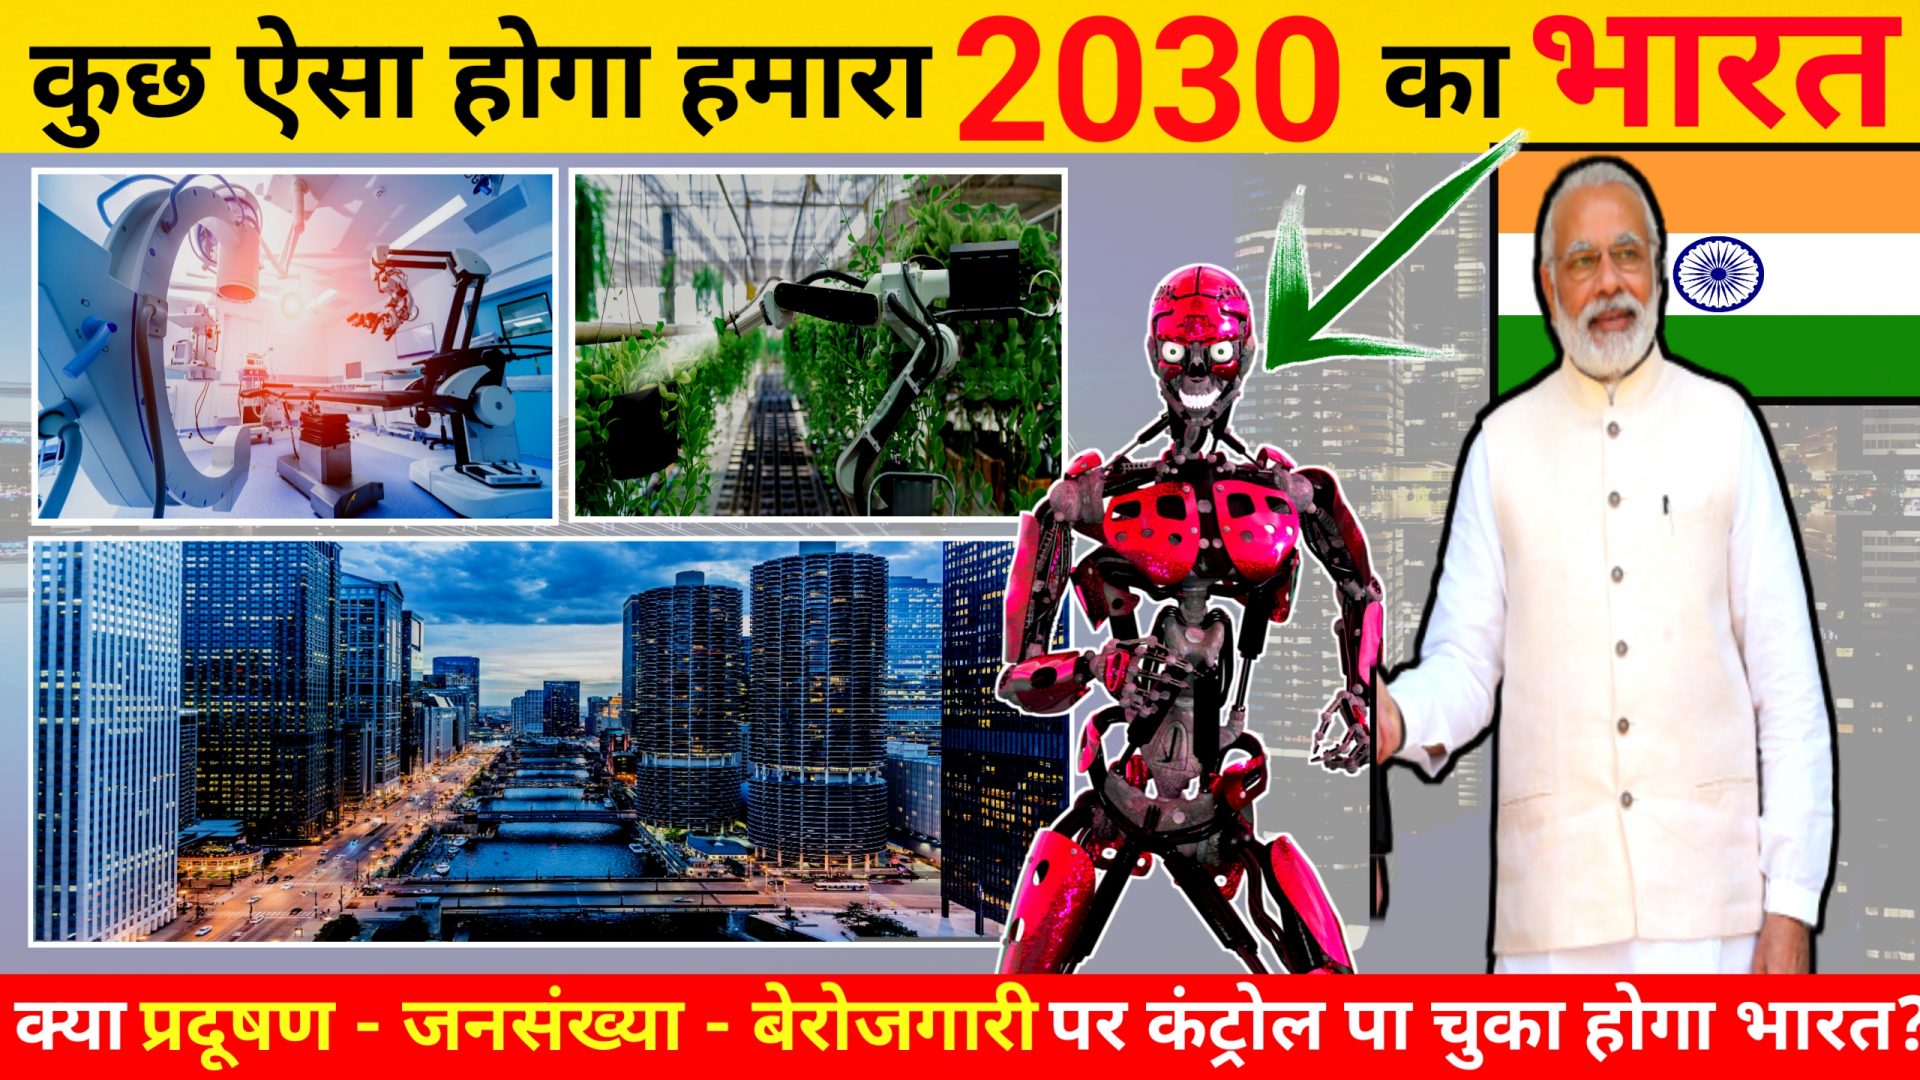 2030-me-bharat-kaisa-hoga